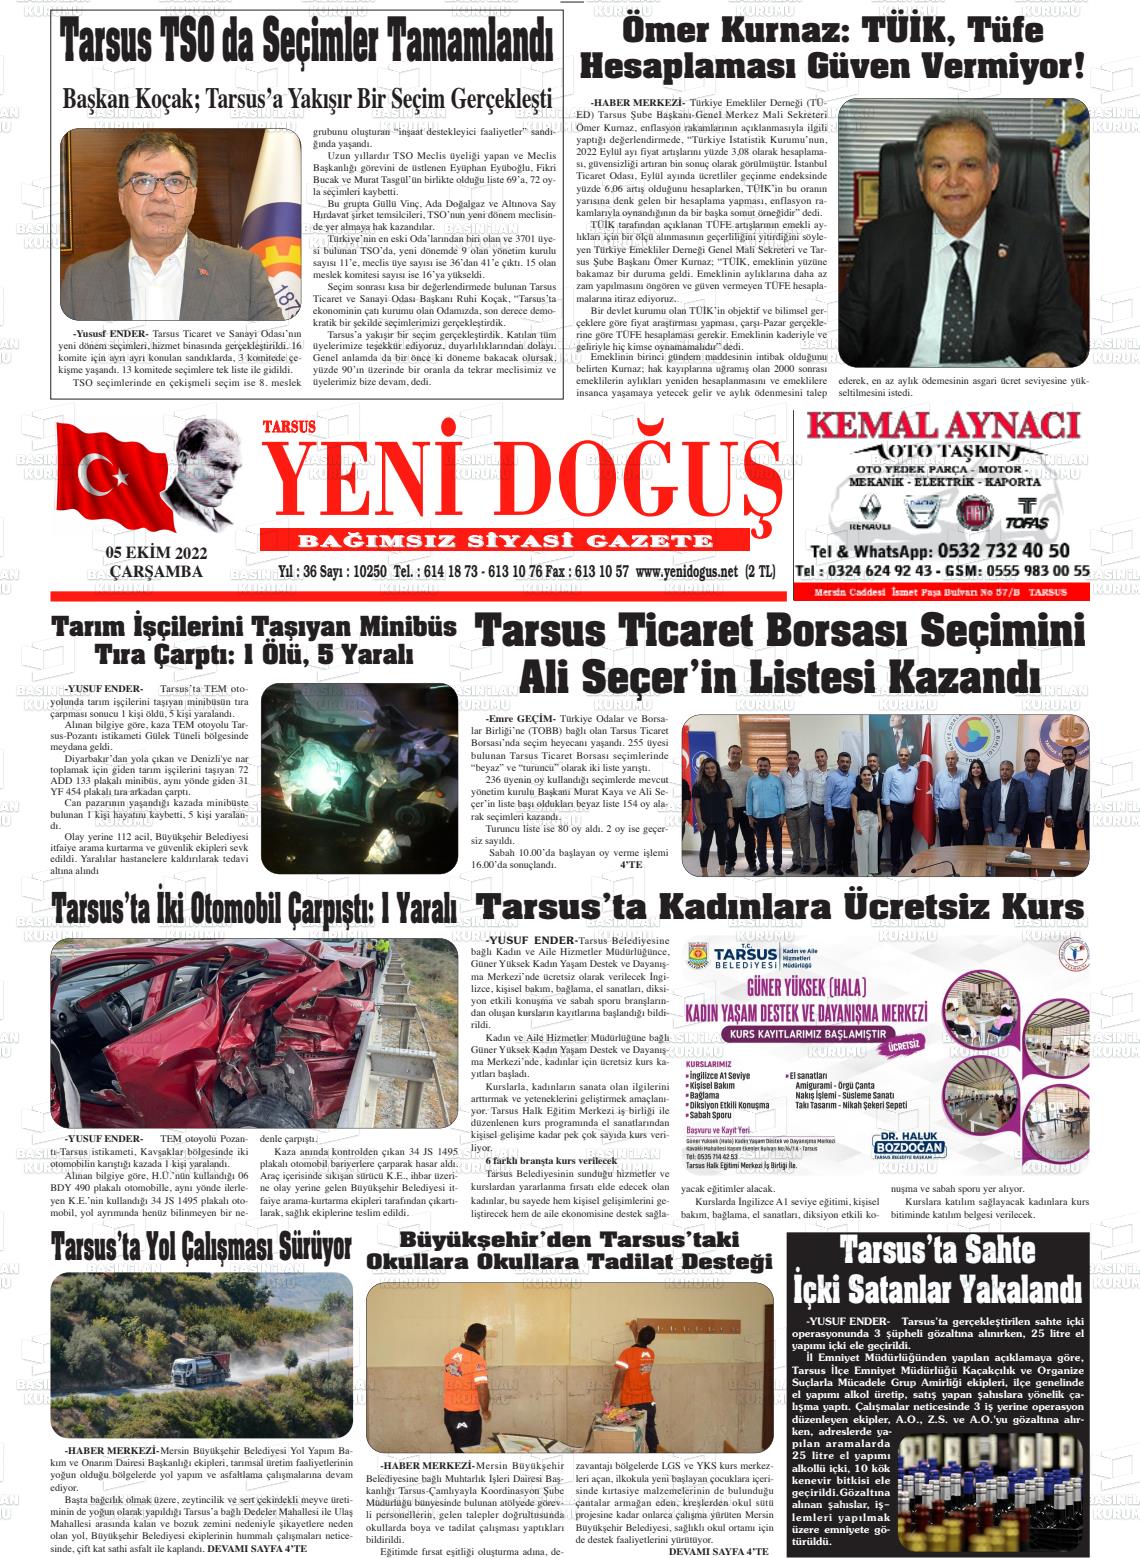 05 Ekim 2022 Tarsus Yeni Doğuş Gazete Manşeti